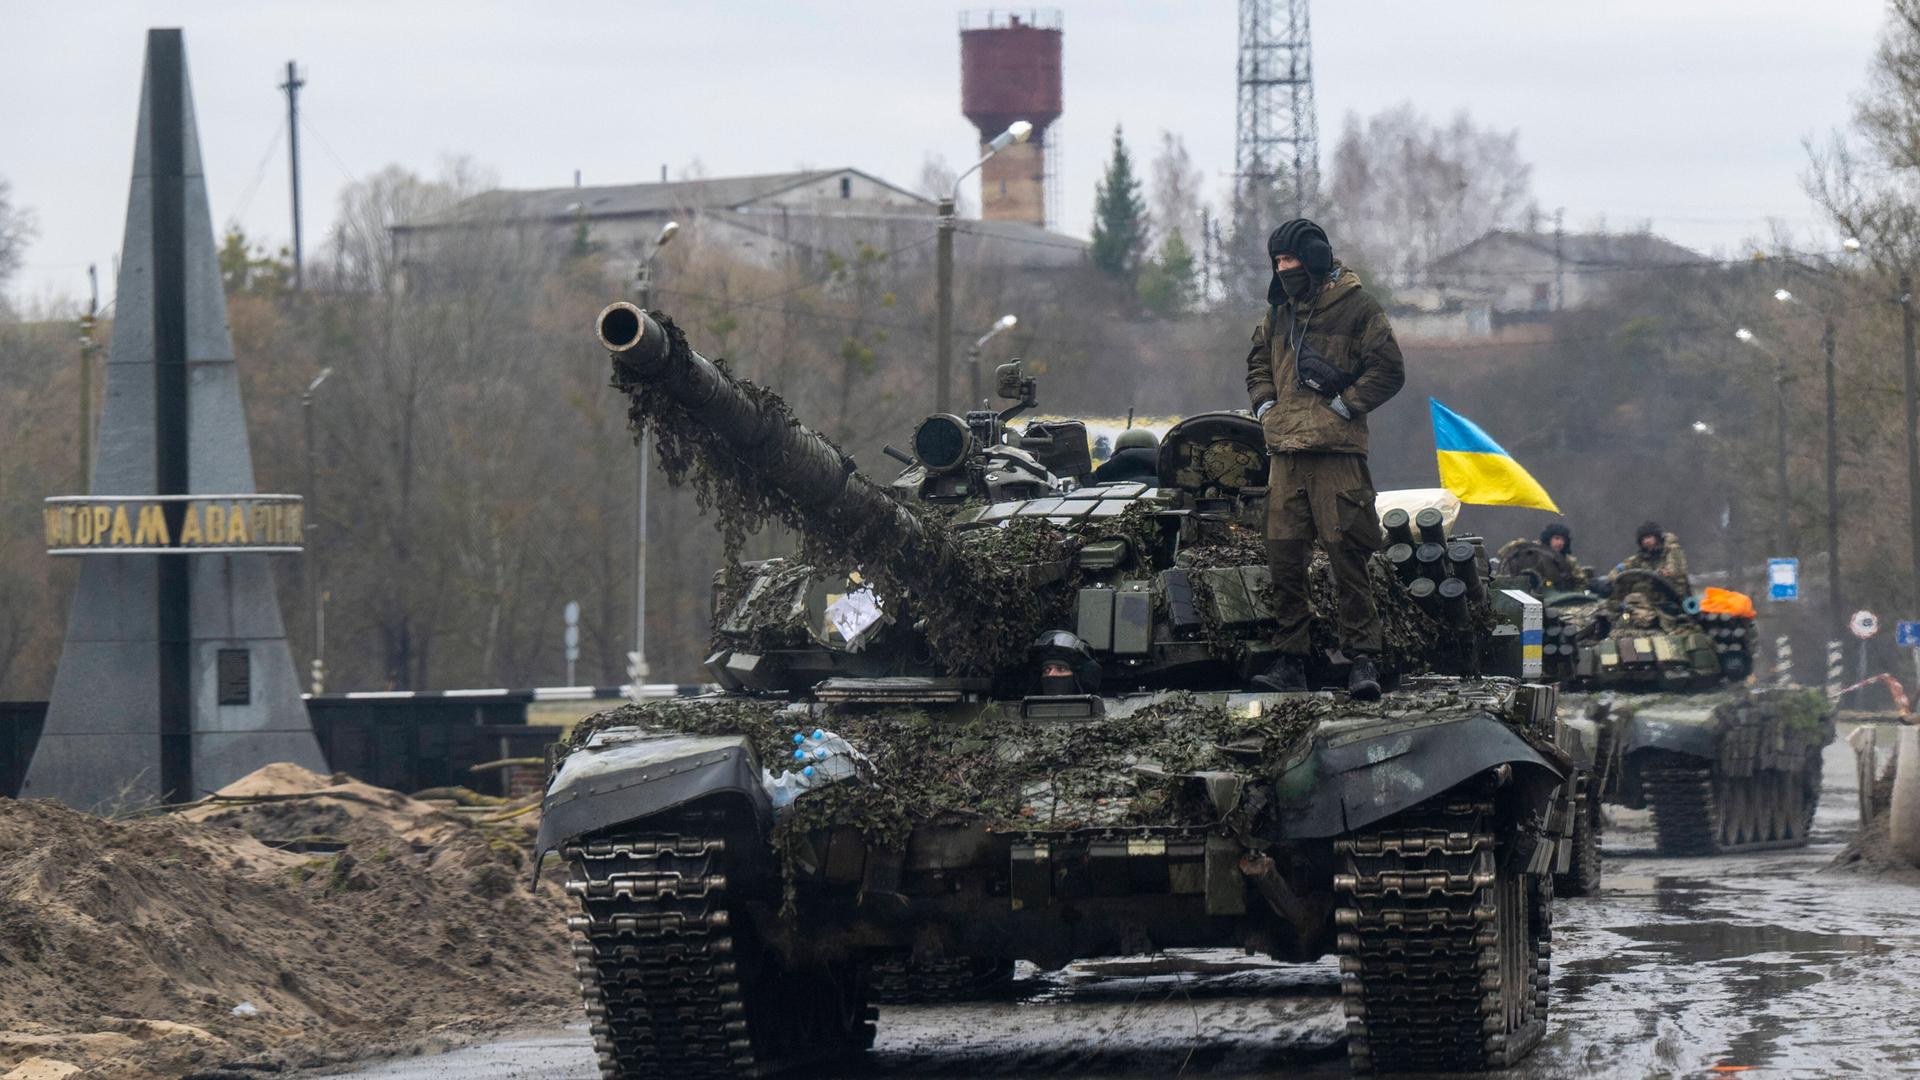 Auf einem Panzer steht ein ukrainischer Soldat, gefolgt von weiteren Panzern. Im Hintergrund ist die ukrainische blau-gelbe Flagge zu sehen.